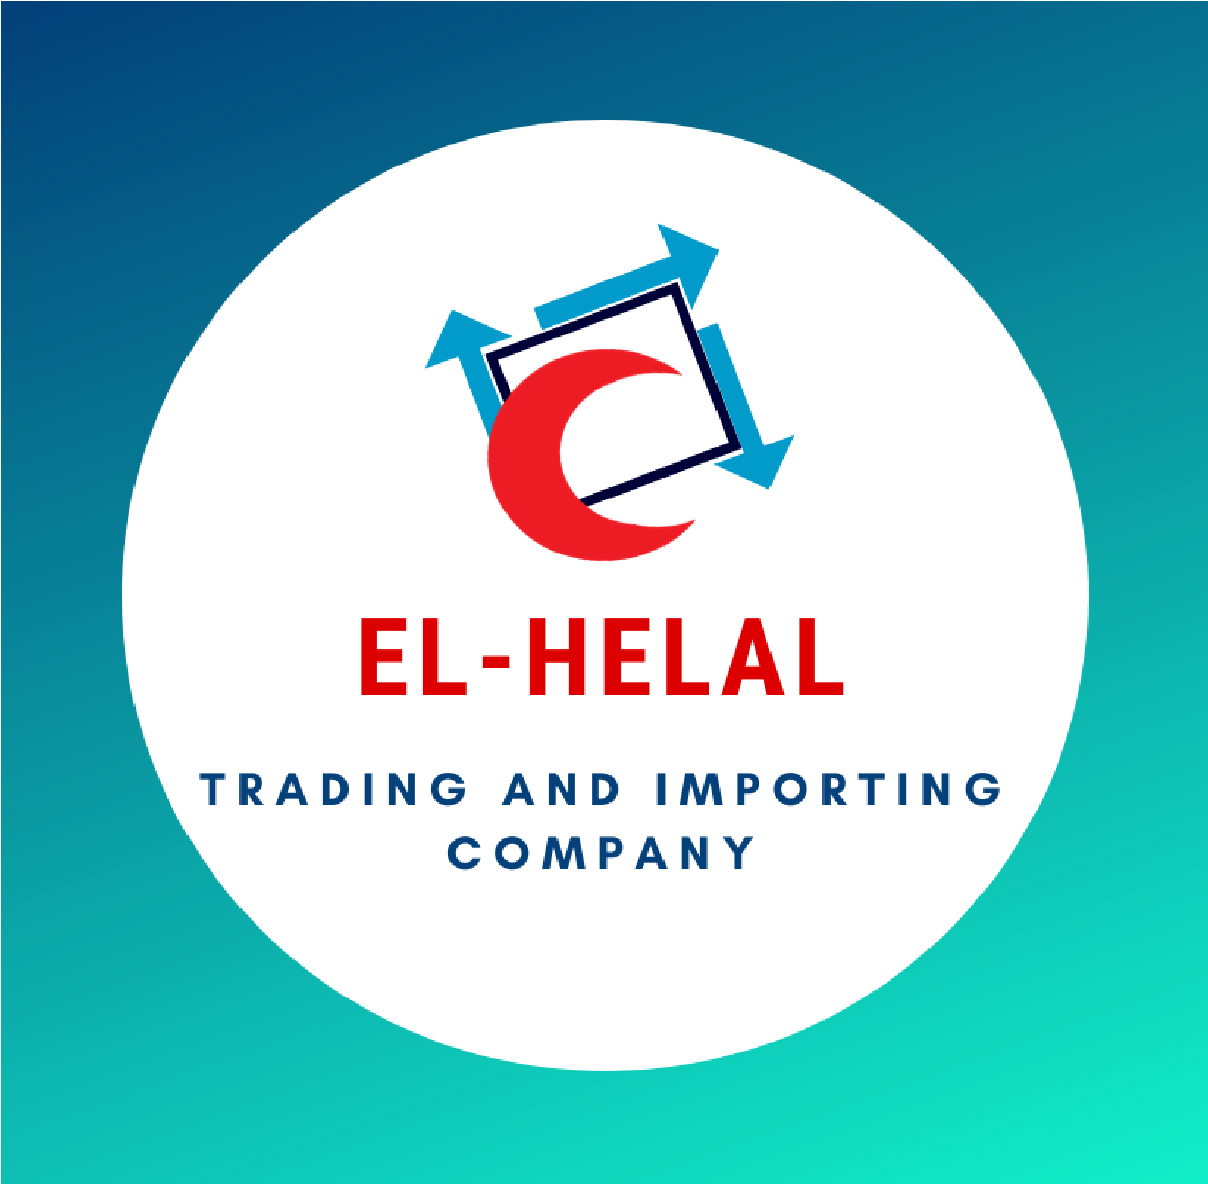 El-Helal Trading